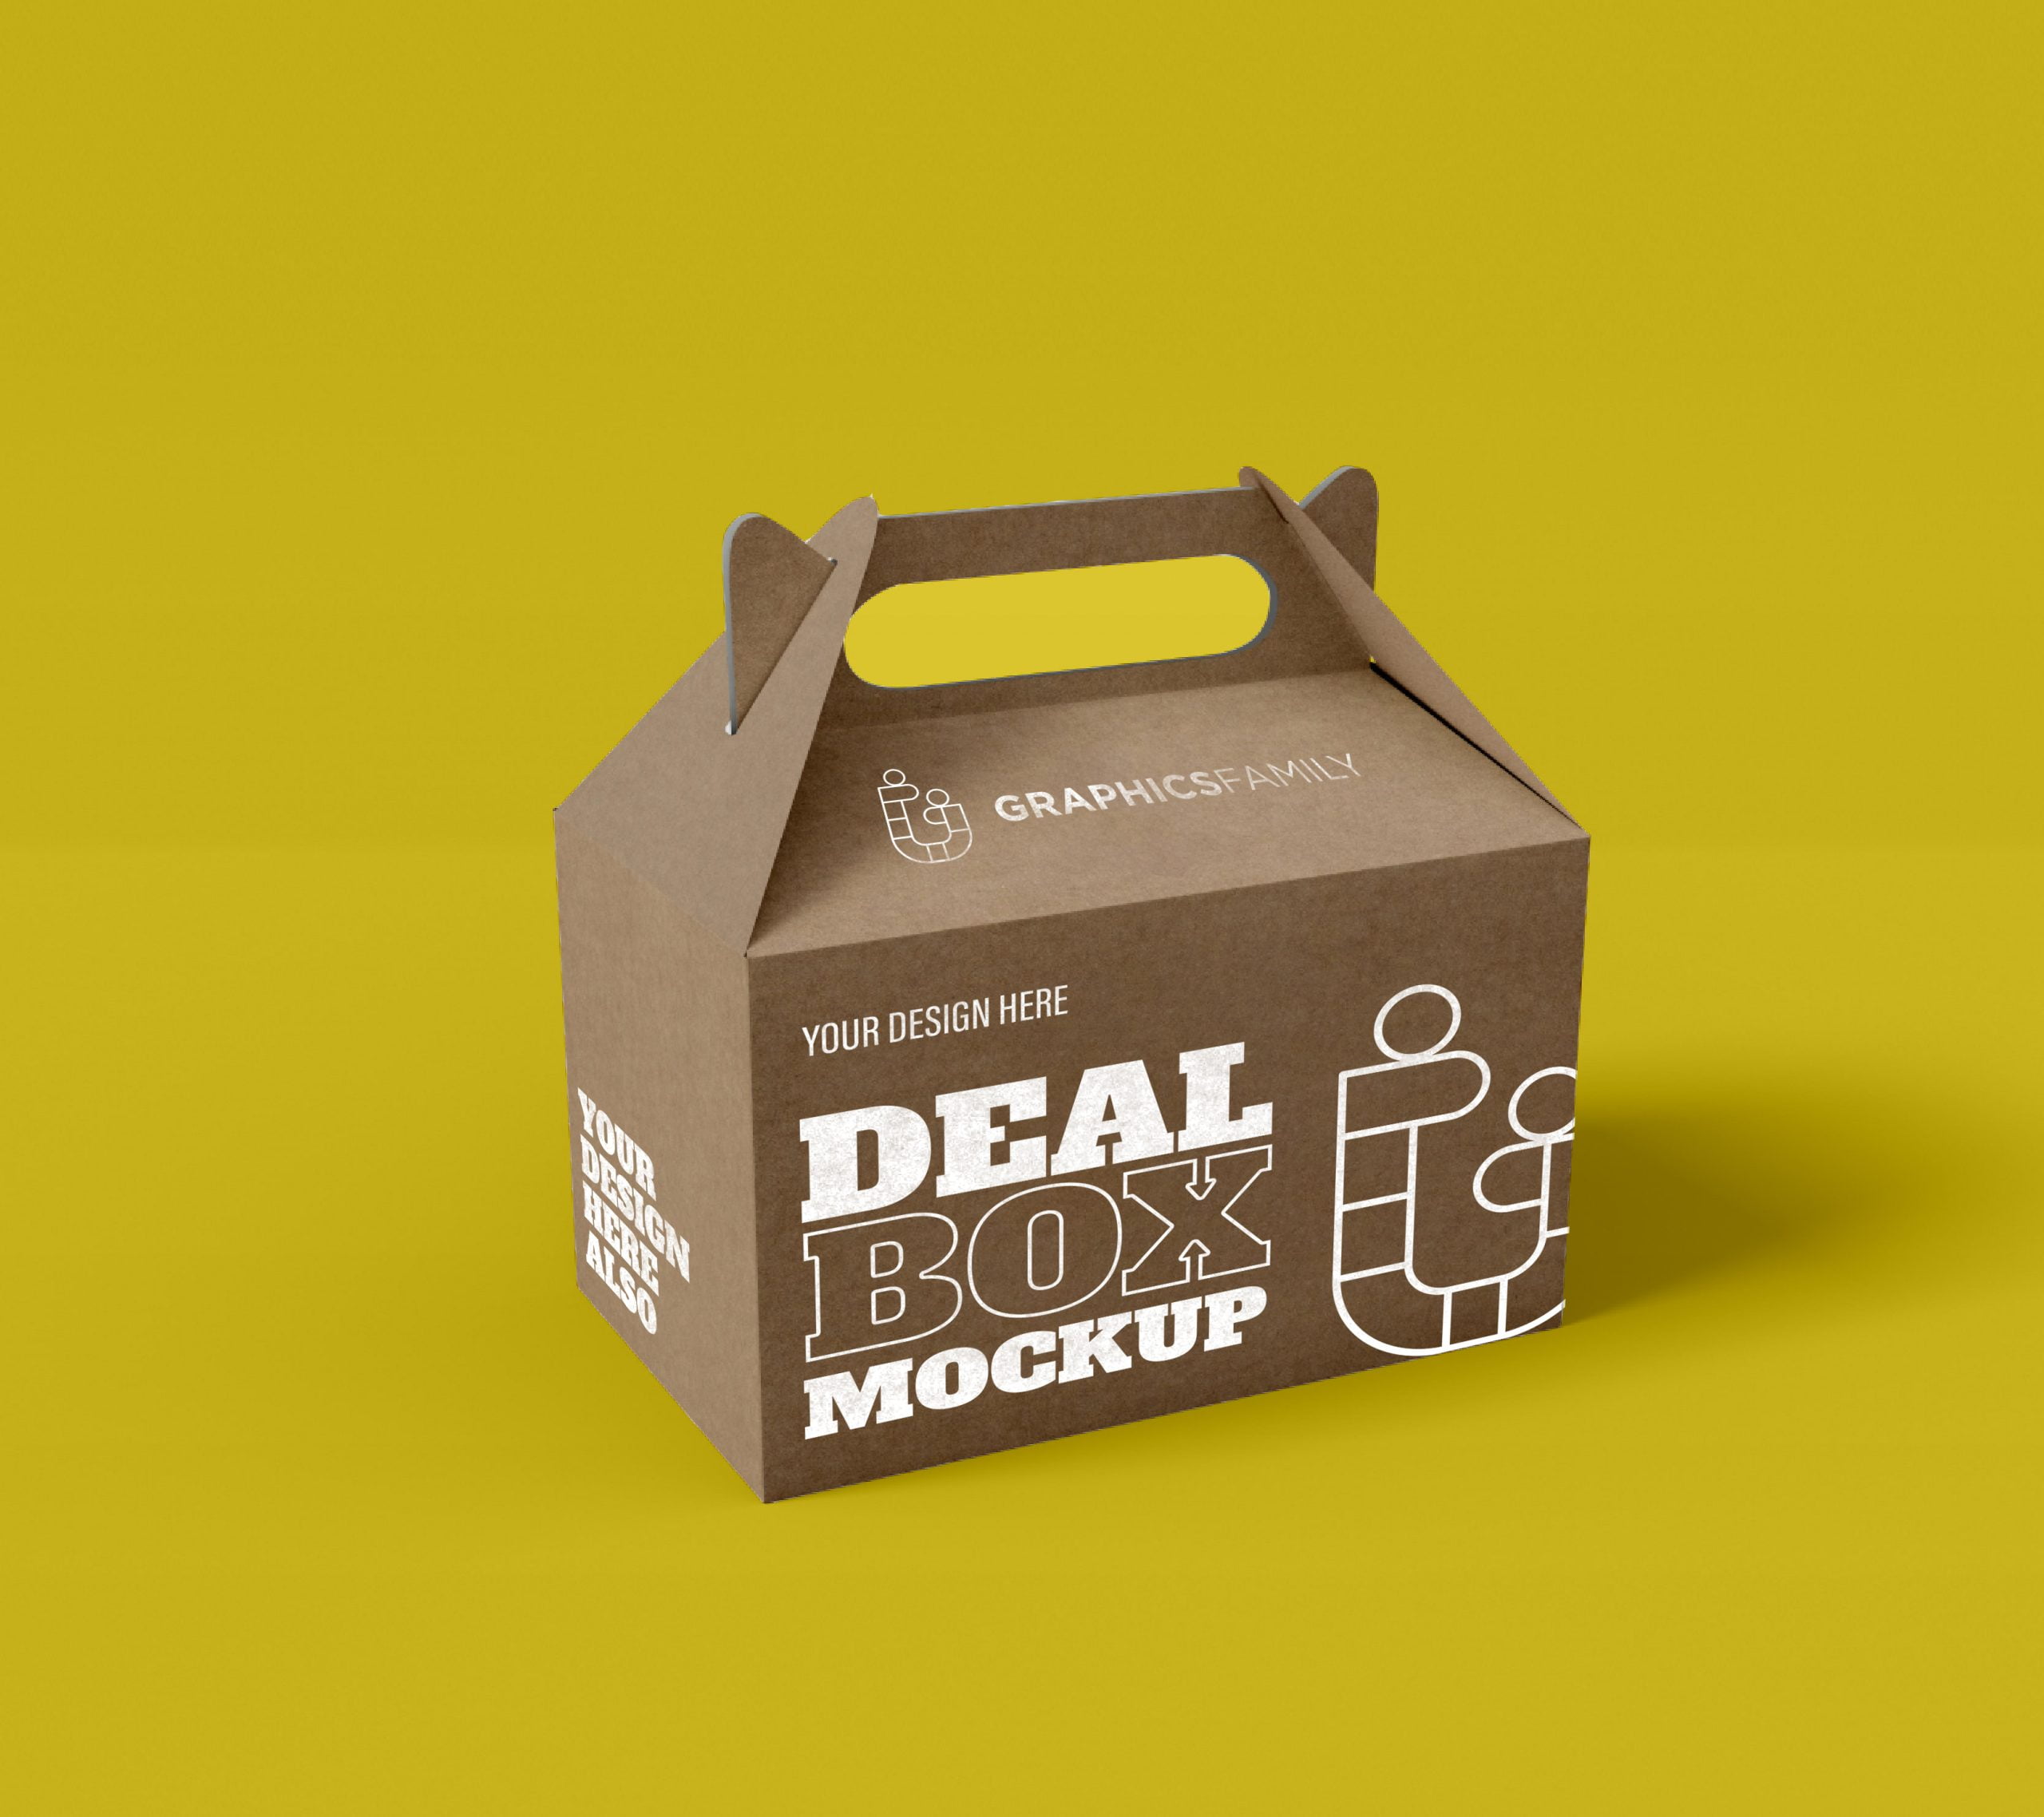 Craft Box Mockup - Free Vectors & PSDs to Download